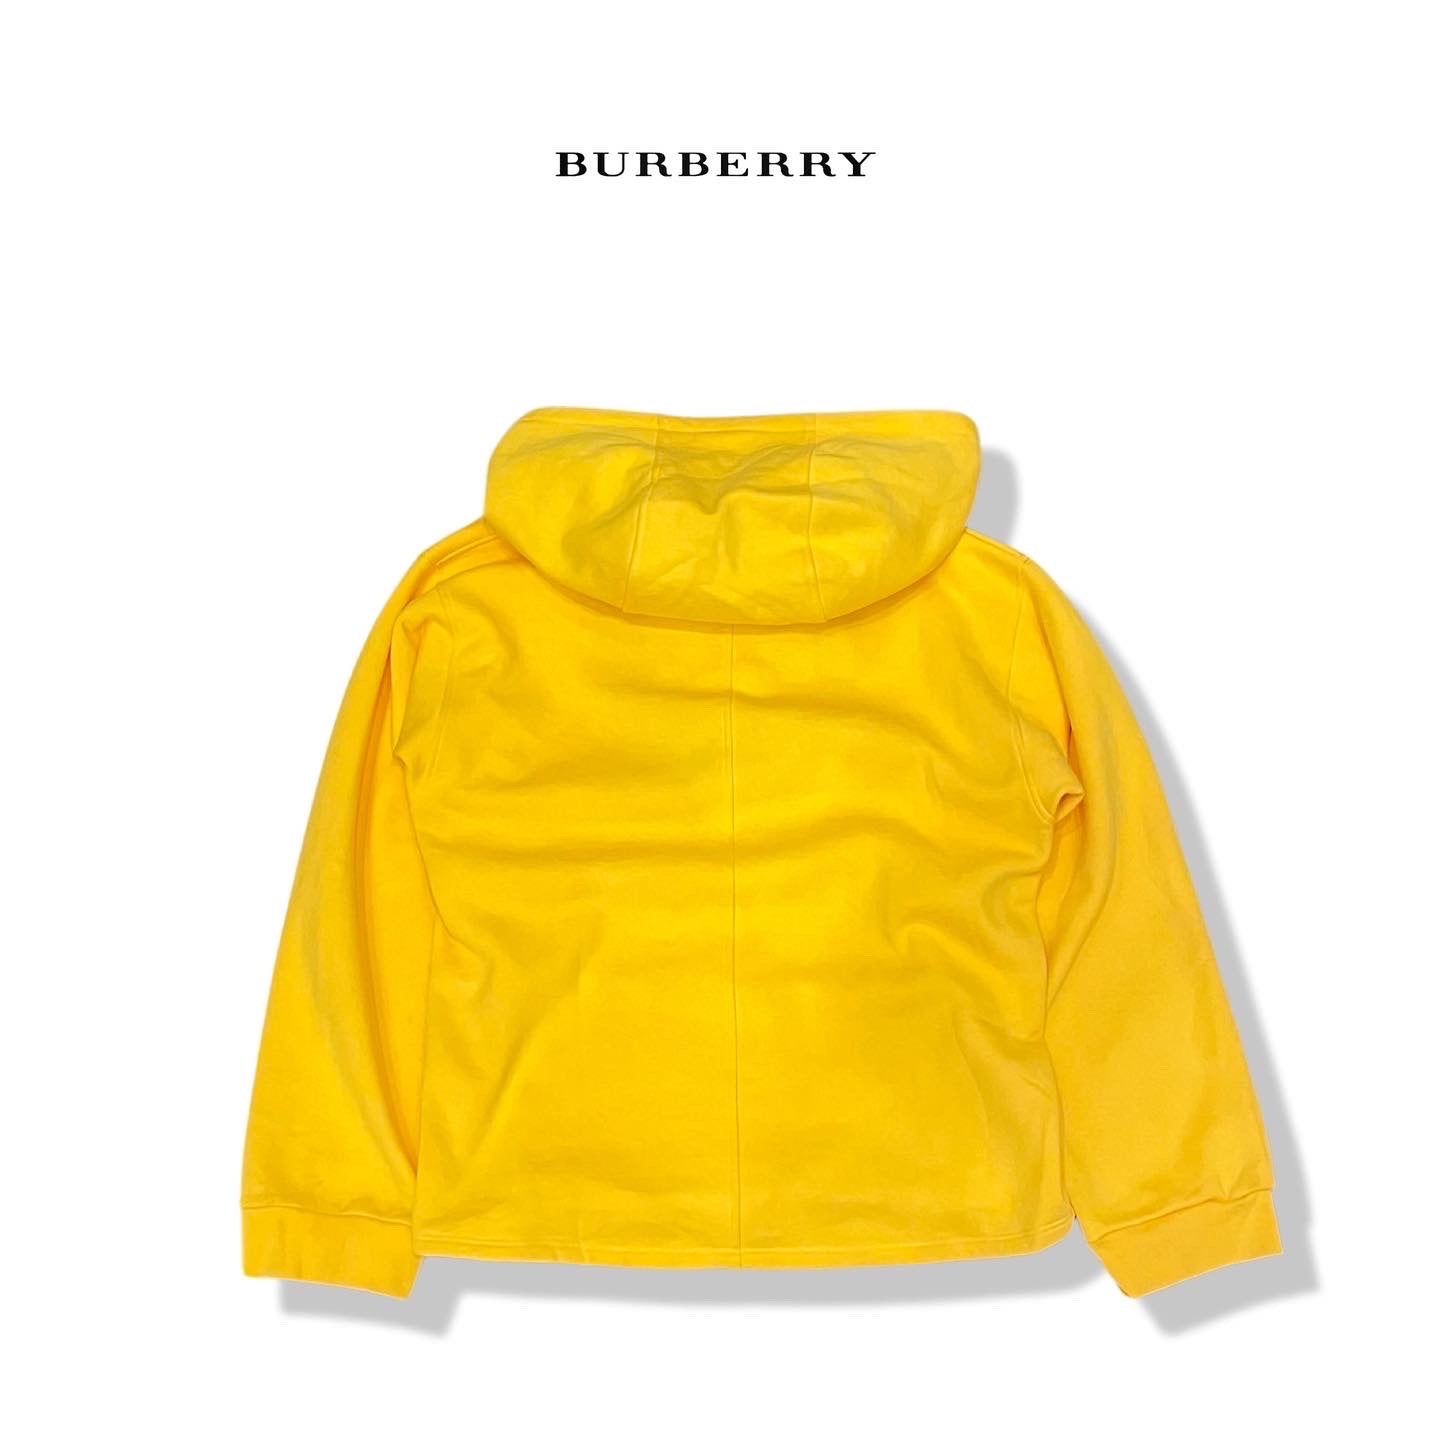 Burberrys hoodies